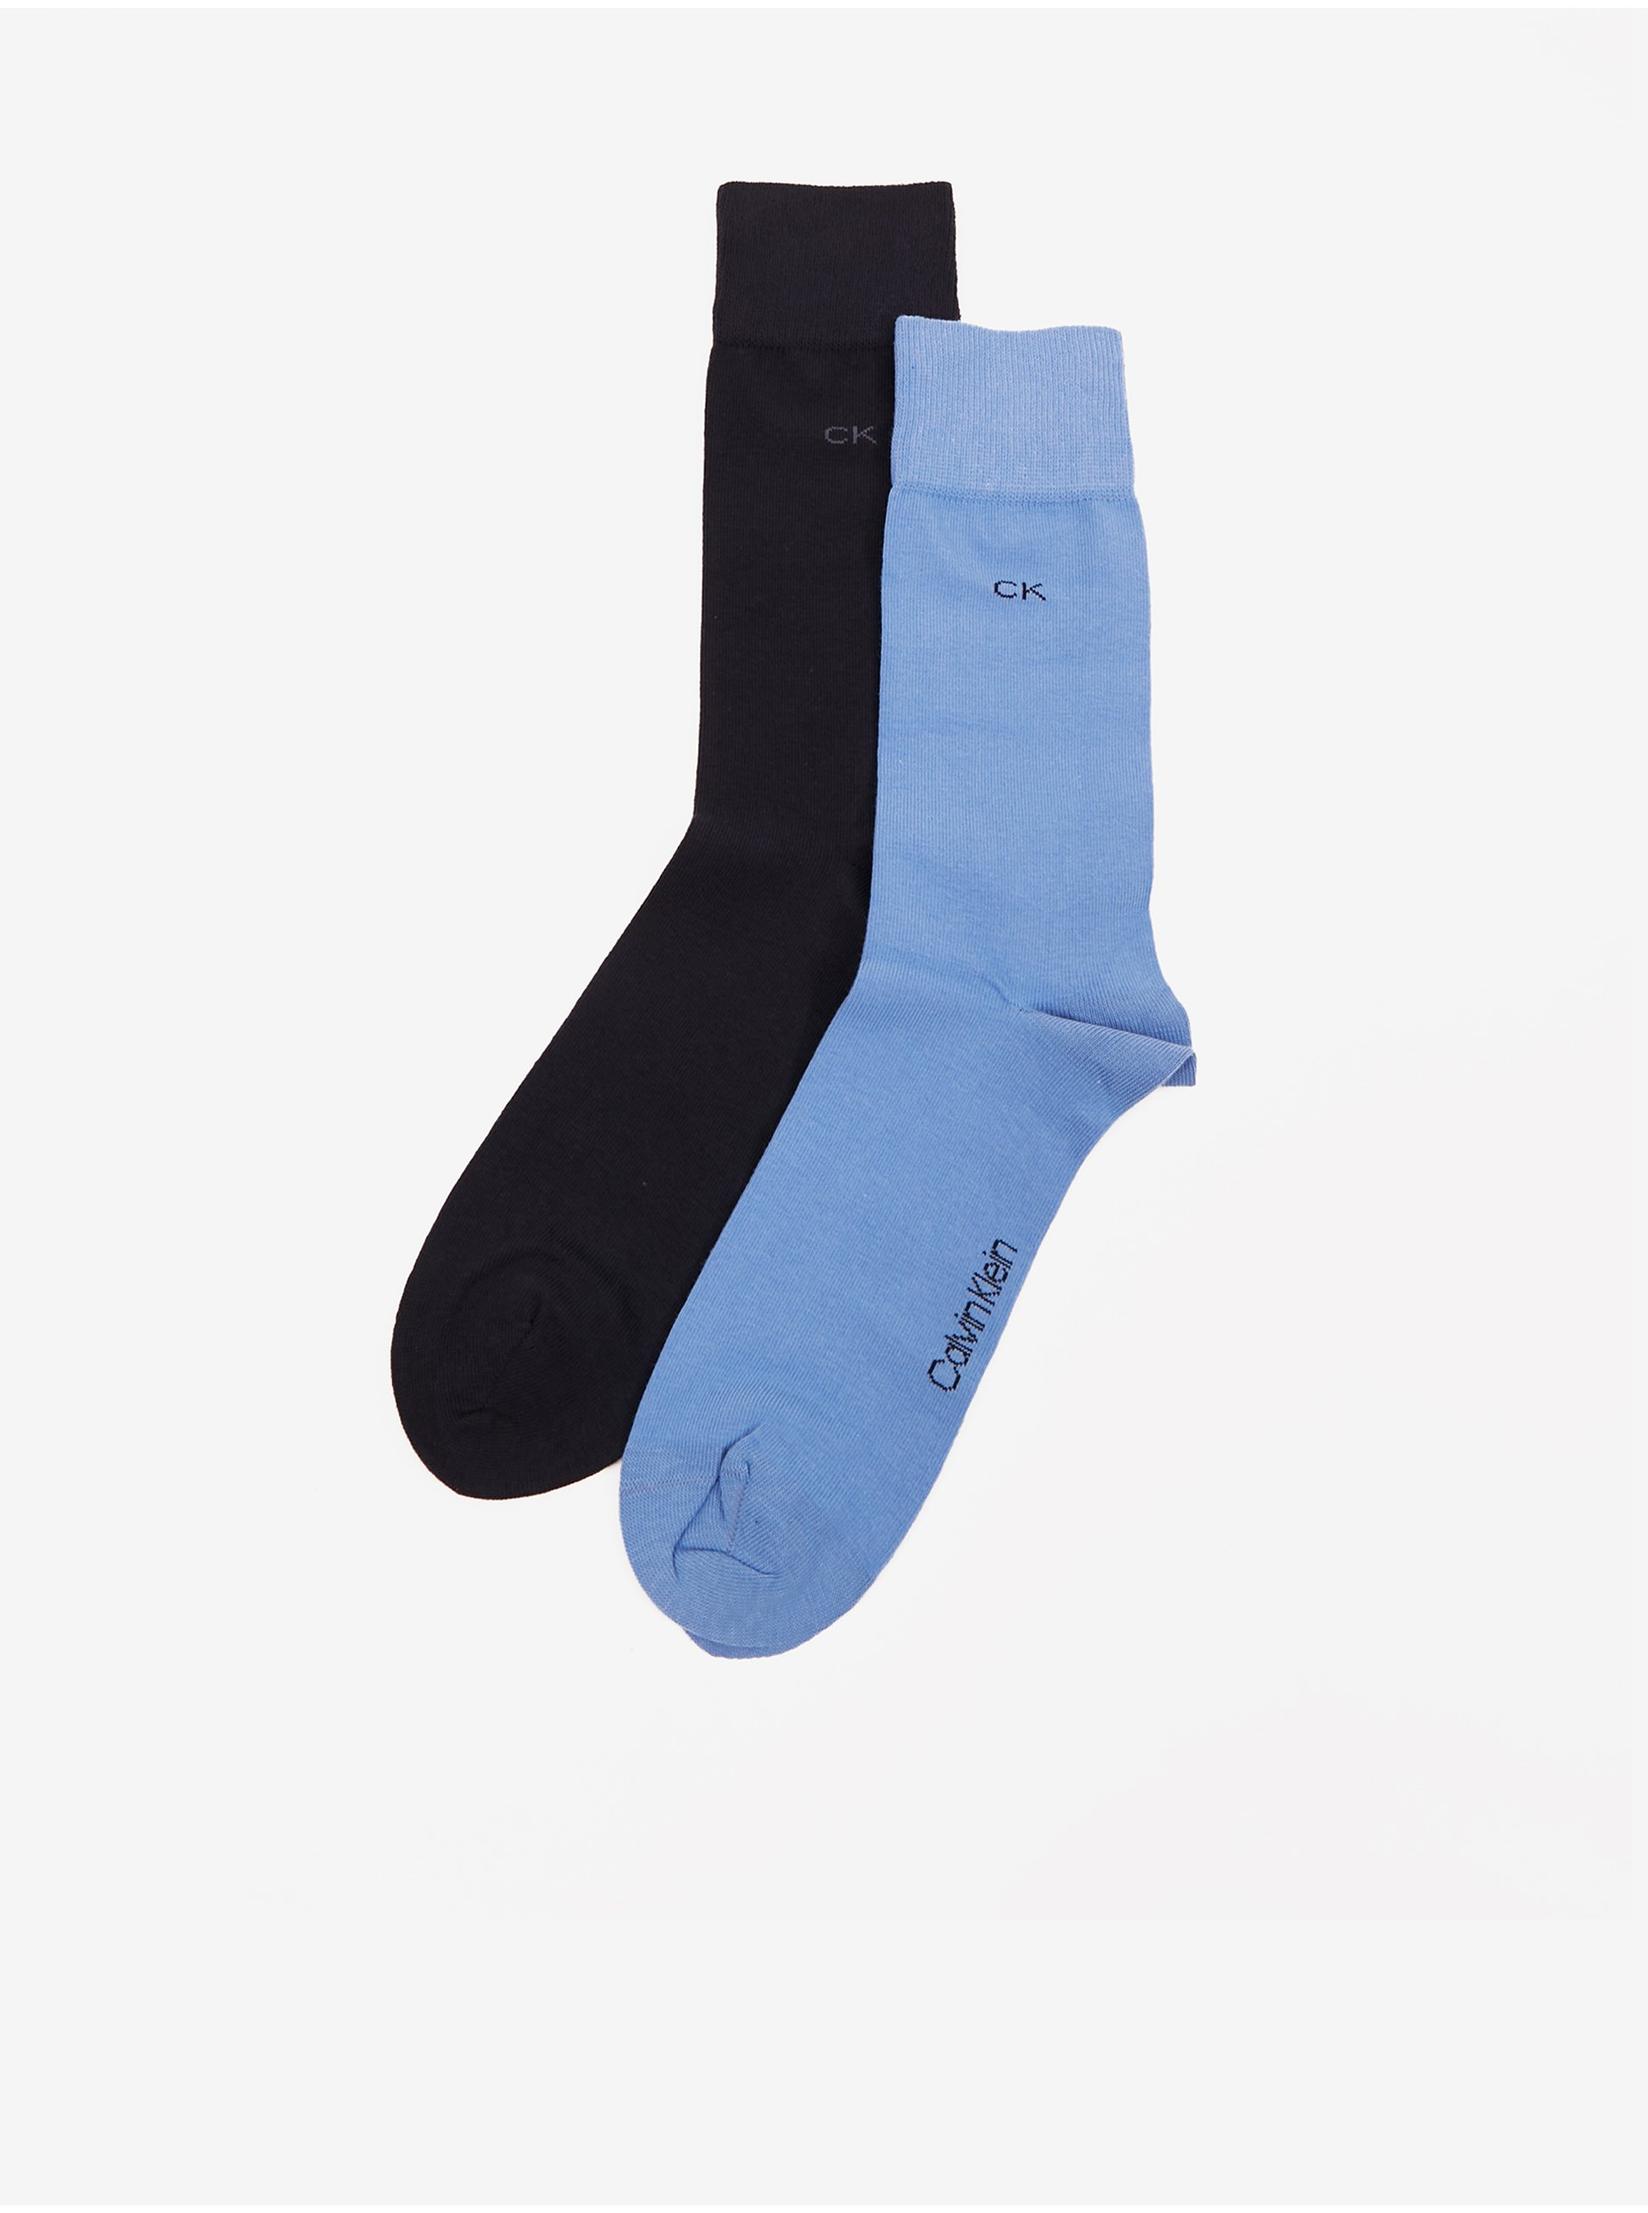 CALVIN KLEIN UNDERWEAR Muške čarape 2/1 crno-plave